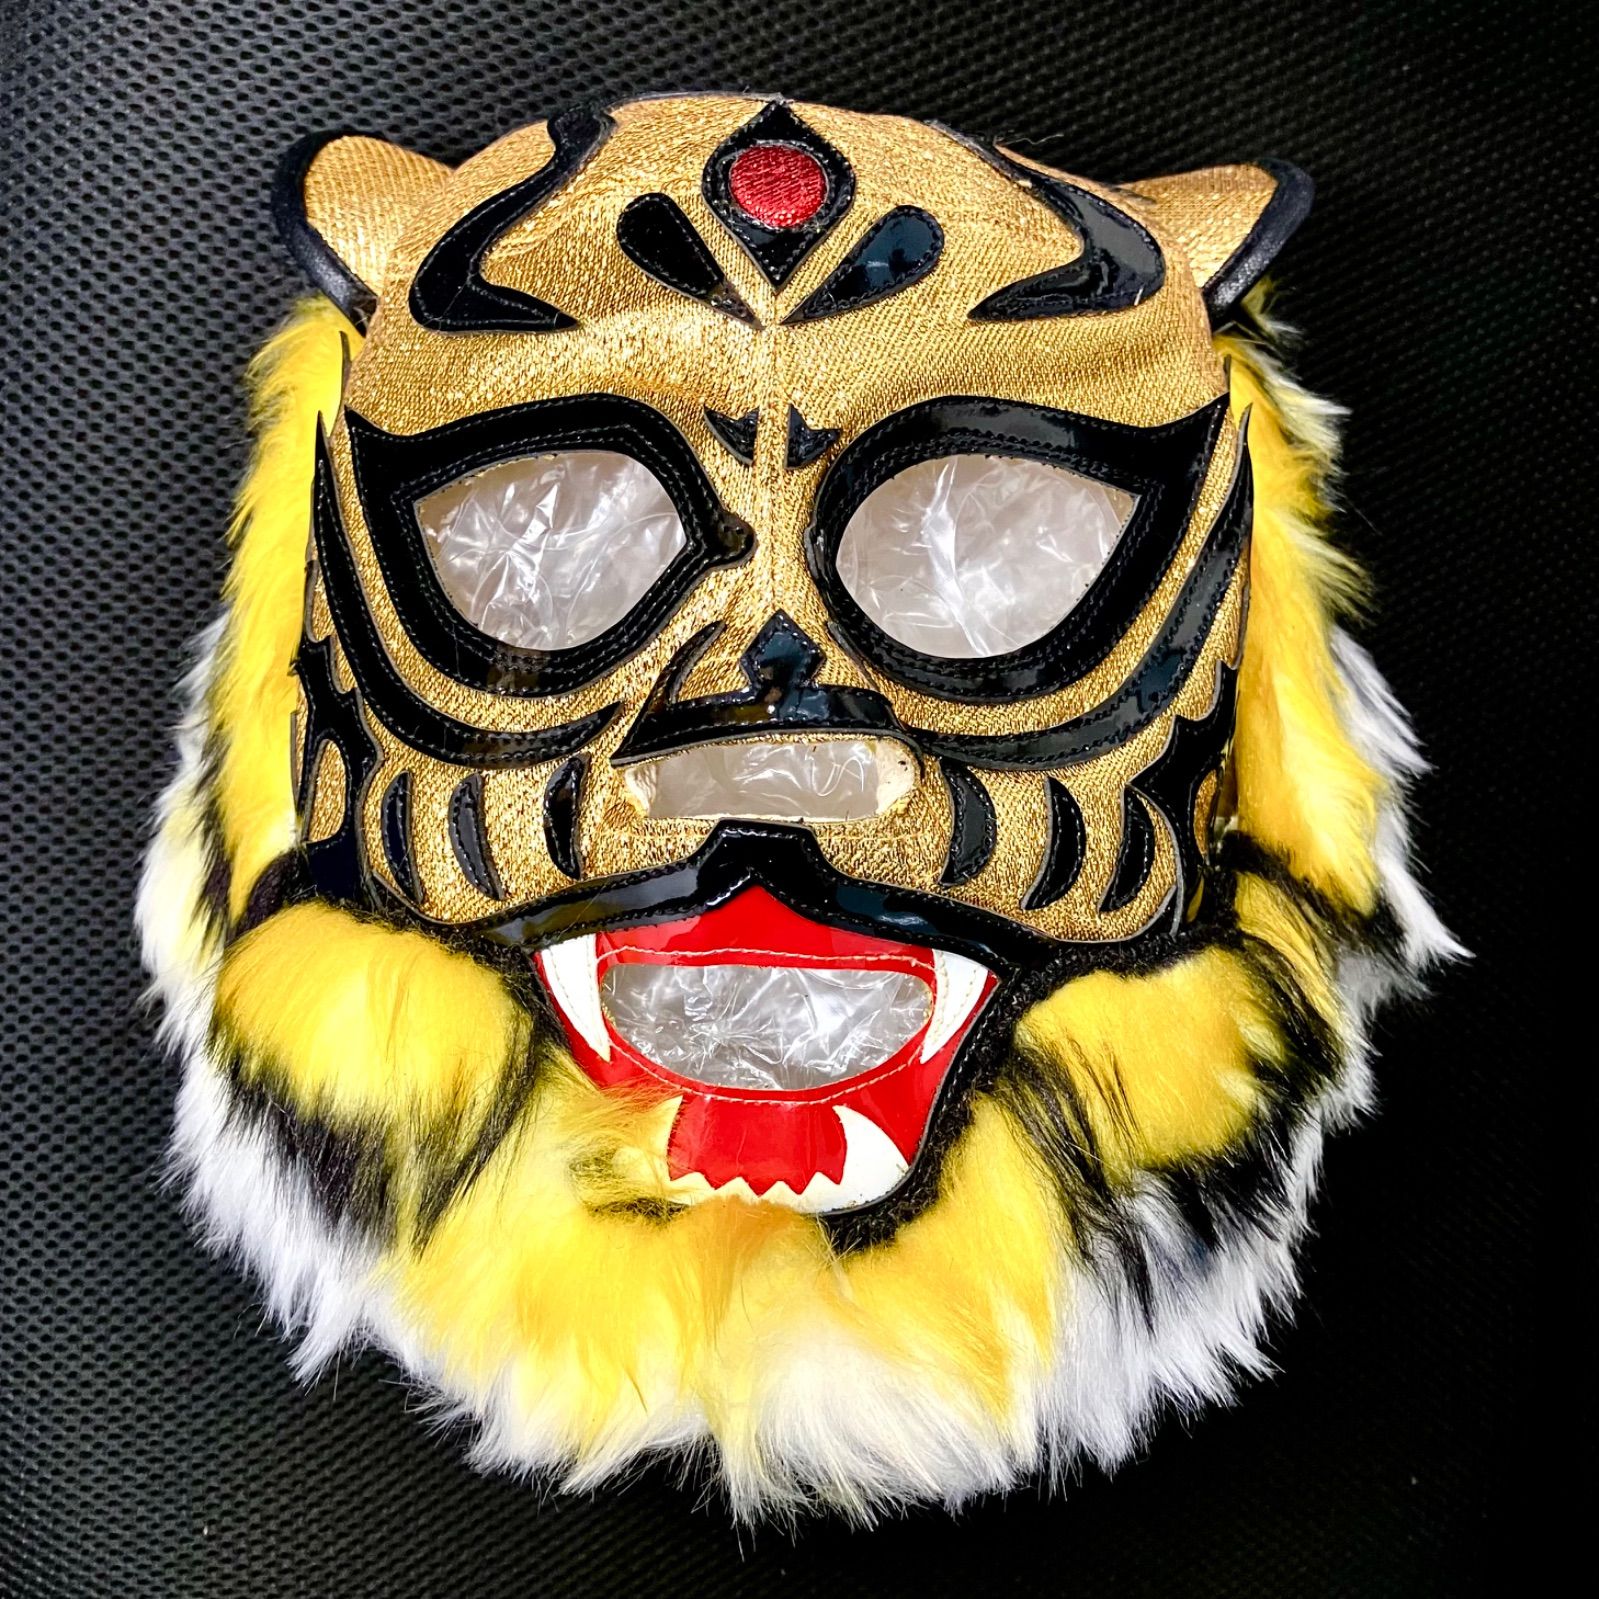 黄金の虎 牙付きタイガーマスク 試合用マスク - スポーツ